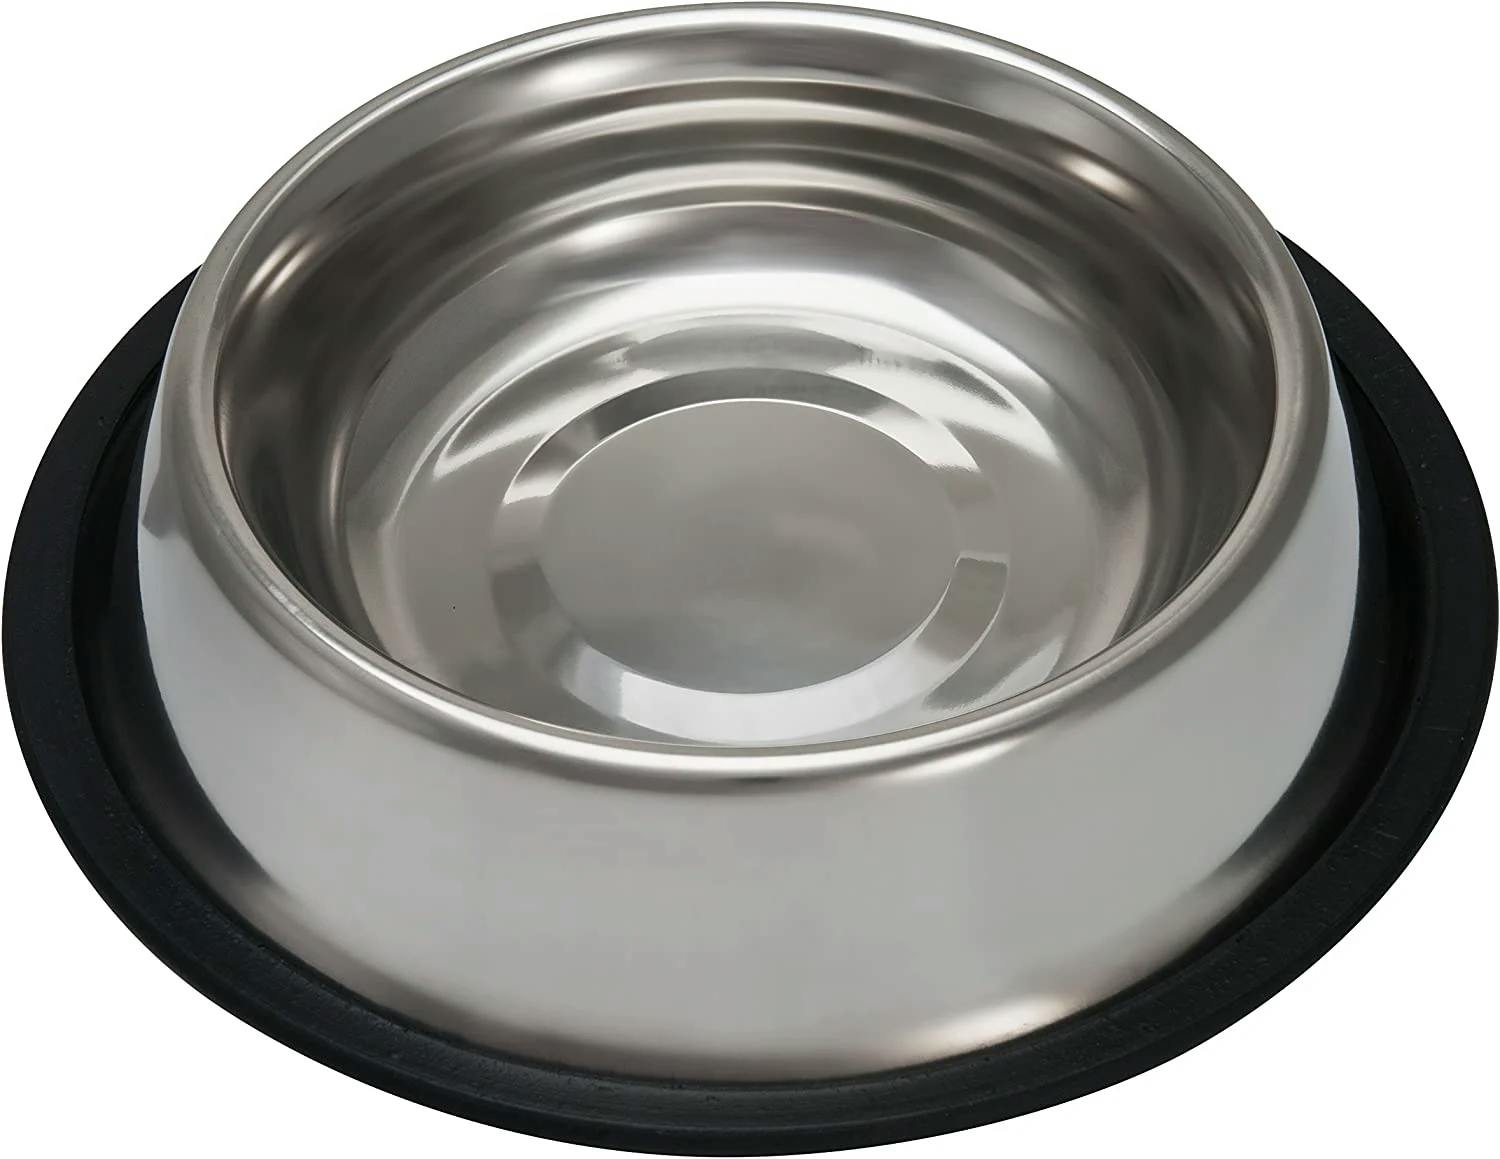 Bowl alimentar perro de 16 onzas